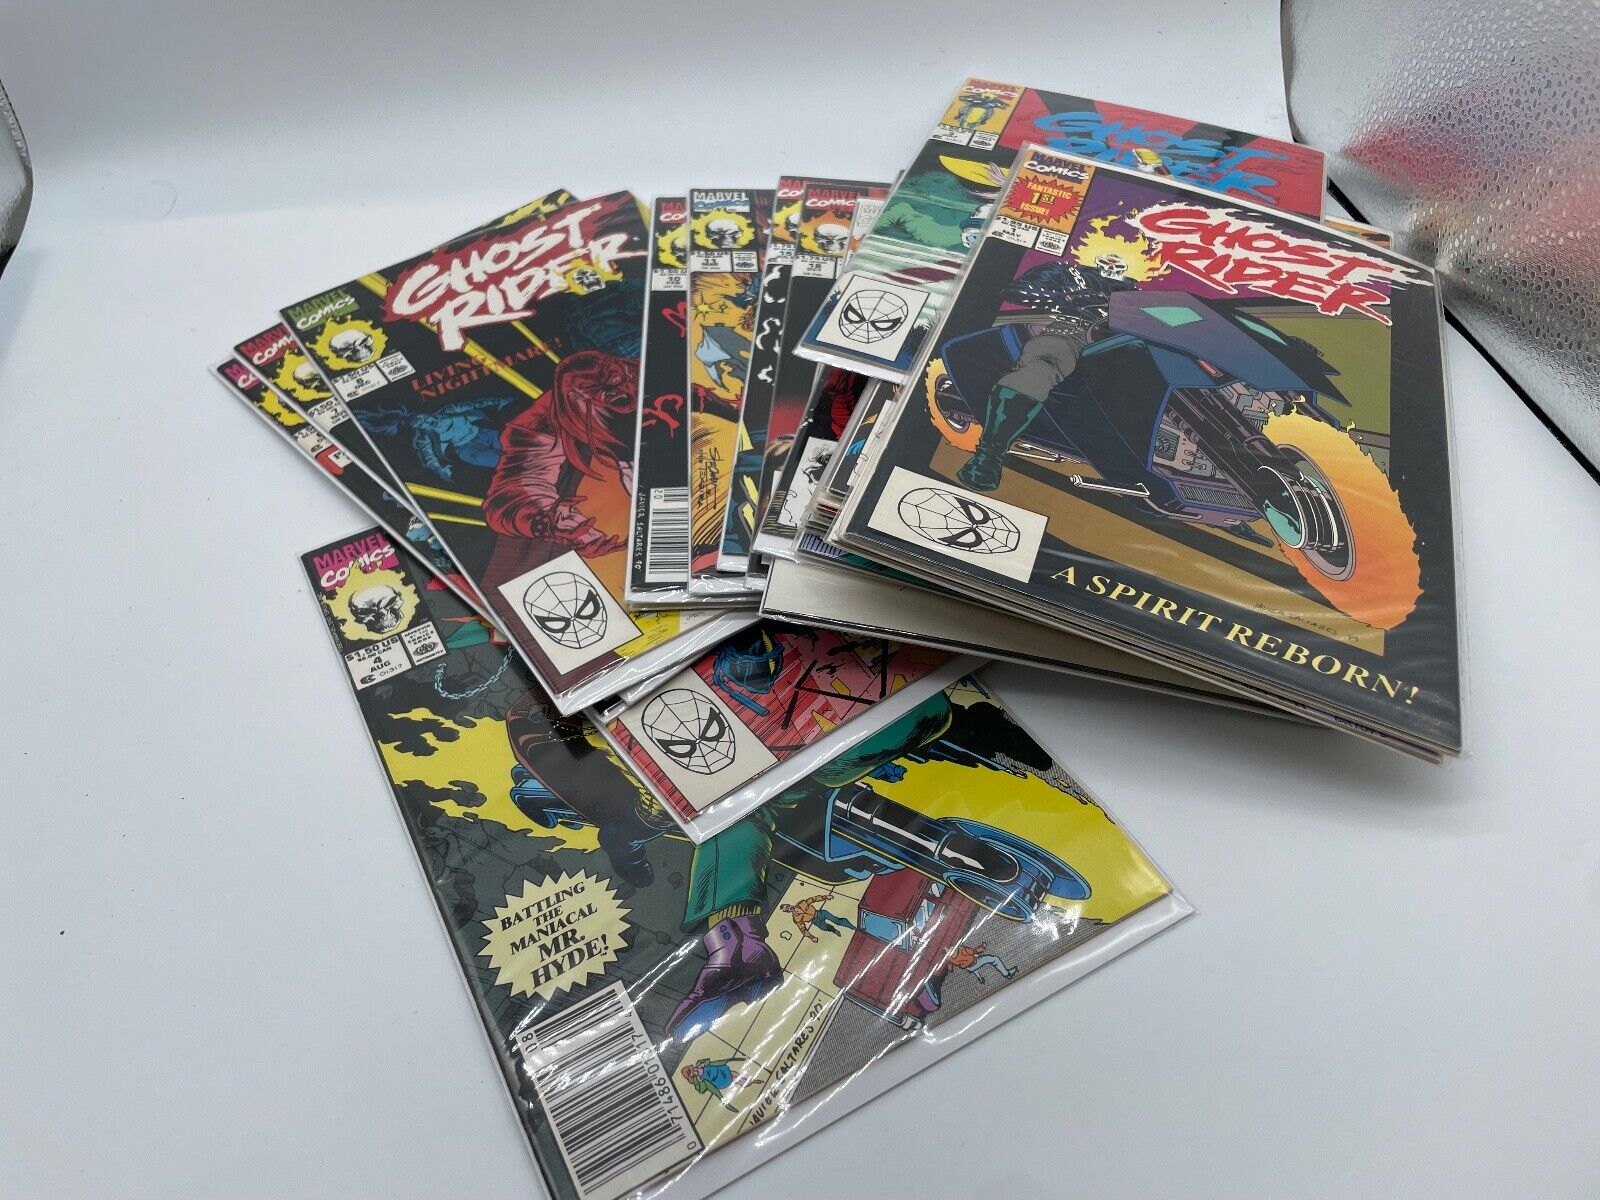 Ghost Rider Vol. 2 #1-22  A Spirit Reborn Marvel 1990 -All VF- Grade worthy